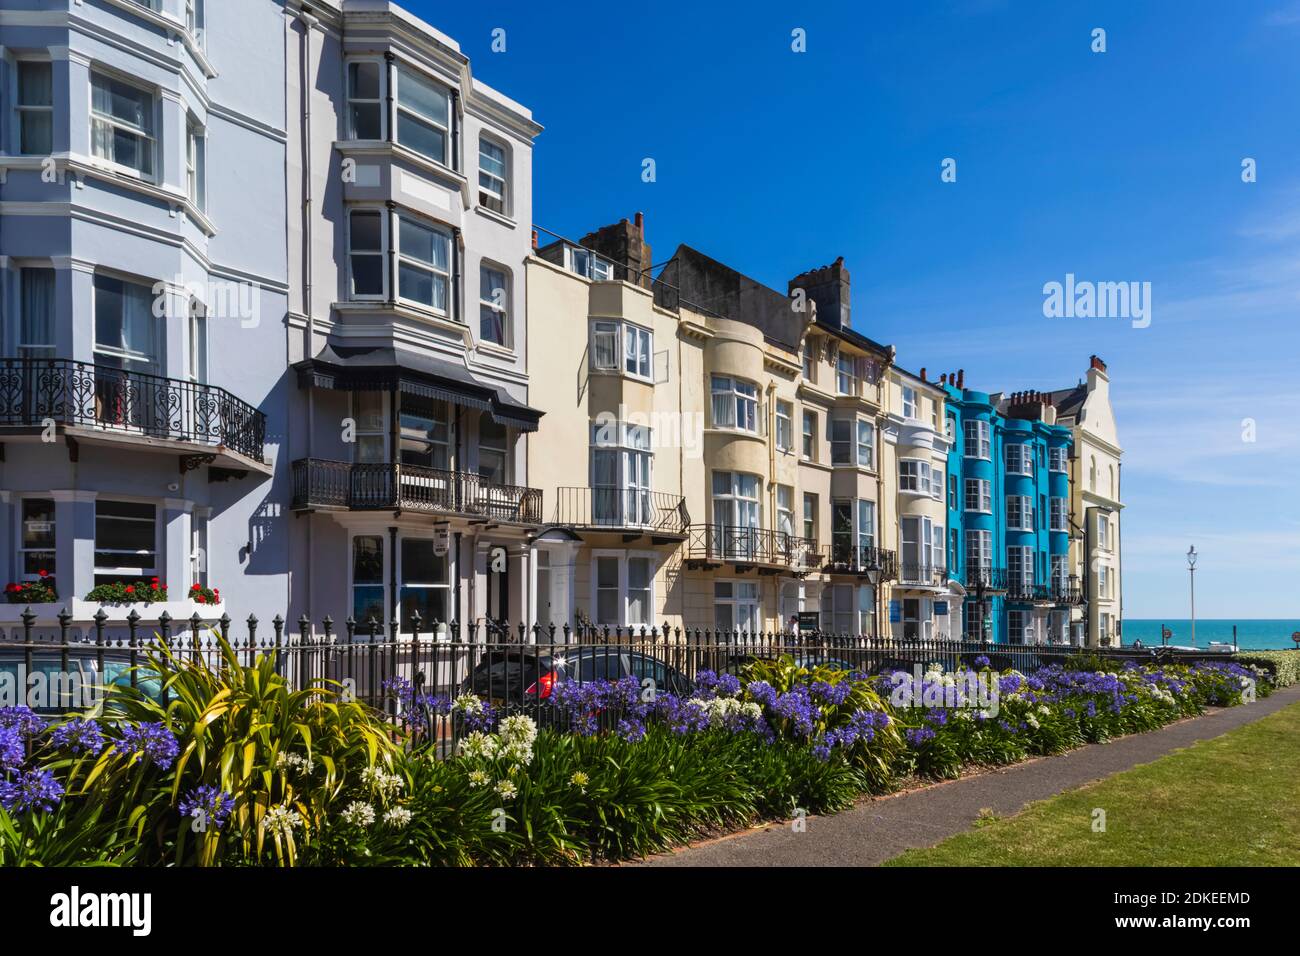 Angleterre, East Sussex, Brighton, Kemptown, les jardins de la Nouvelle Steine et les hôtels et bâtiments résidentiels colorés Banque D'Images